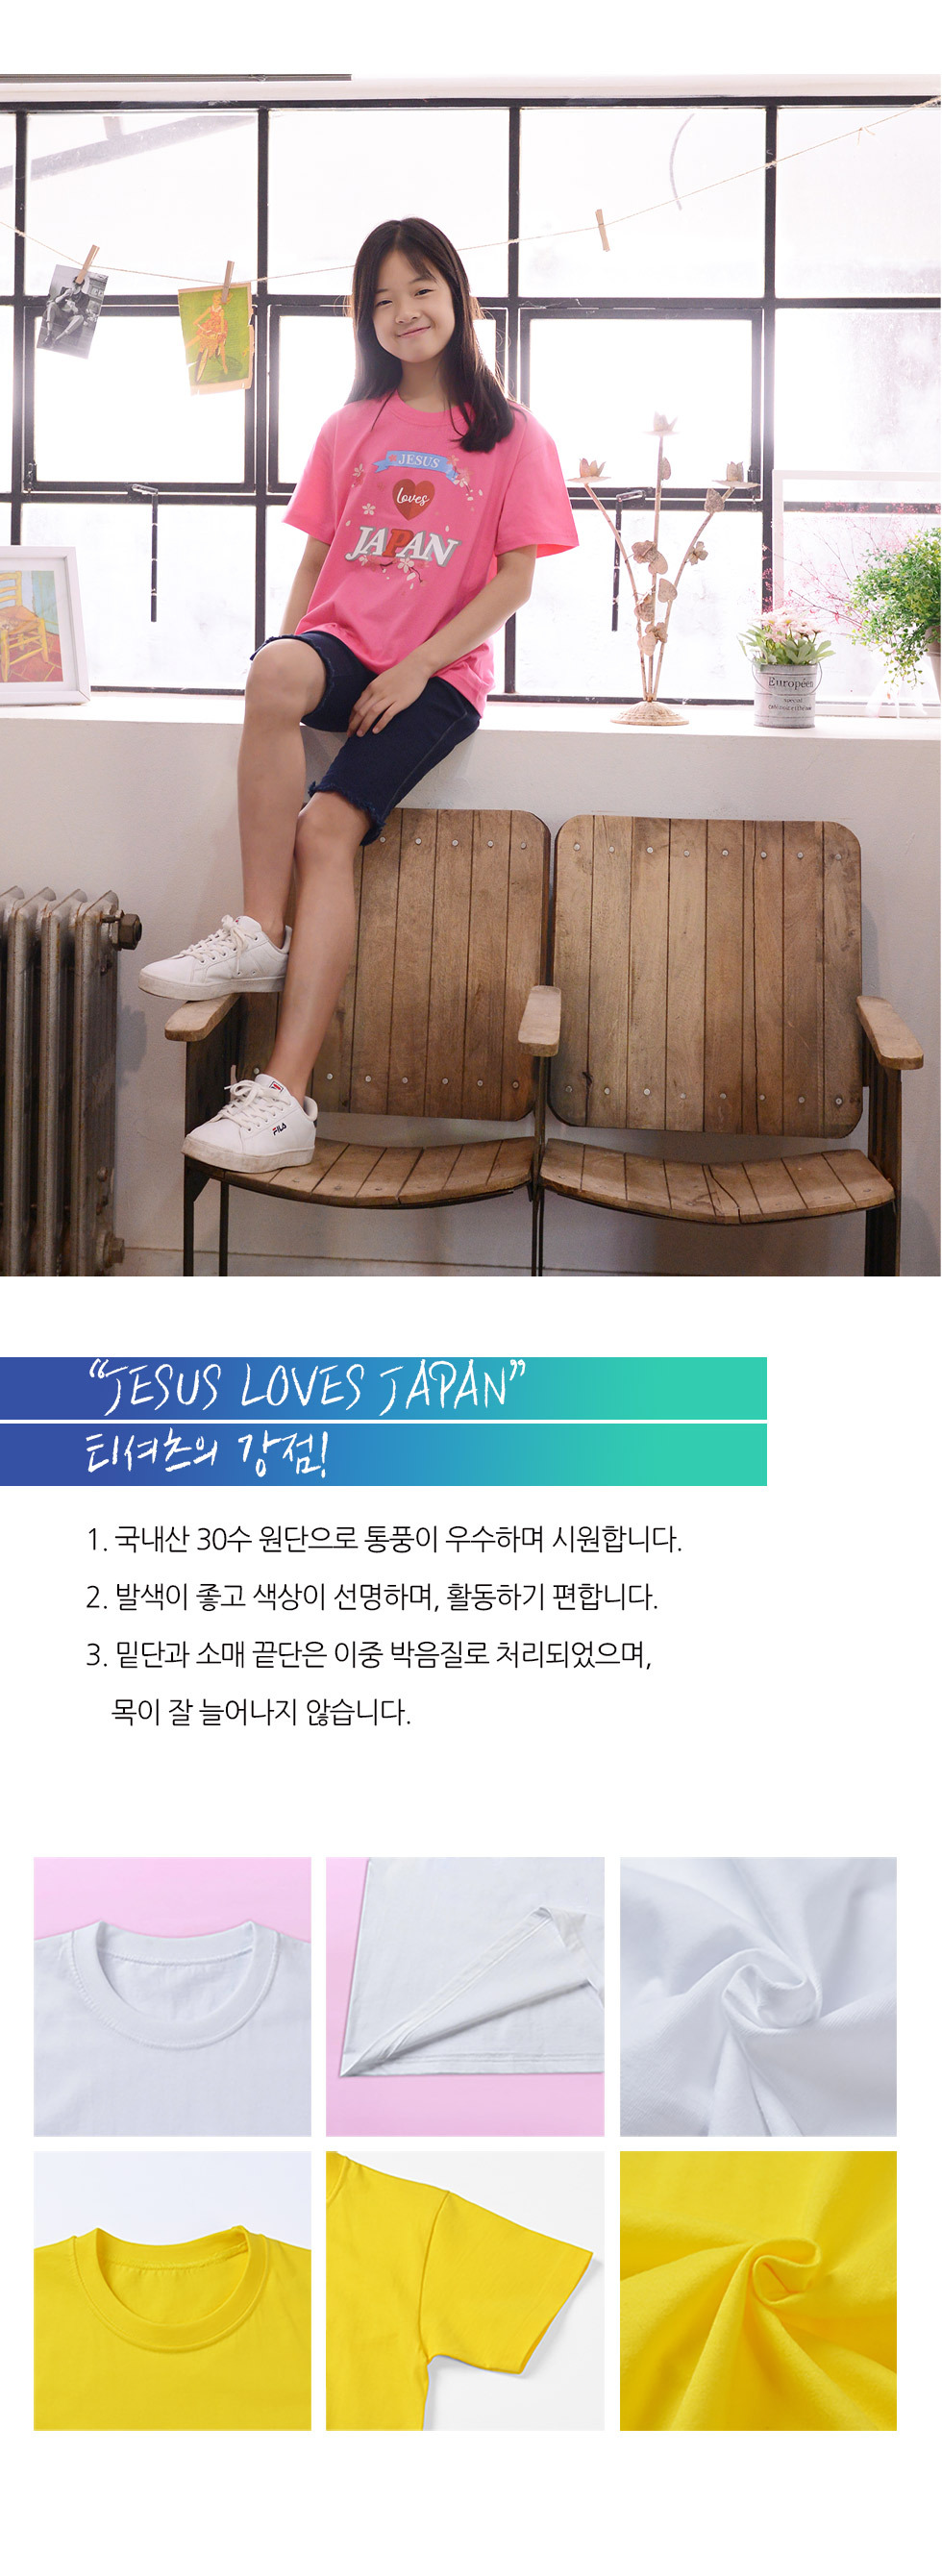 교회 단체티셔츠 일본 선교티 (Jesus loves Japan) - 미션트립 단체티셔츠 아동티셔츠(일본선교) 